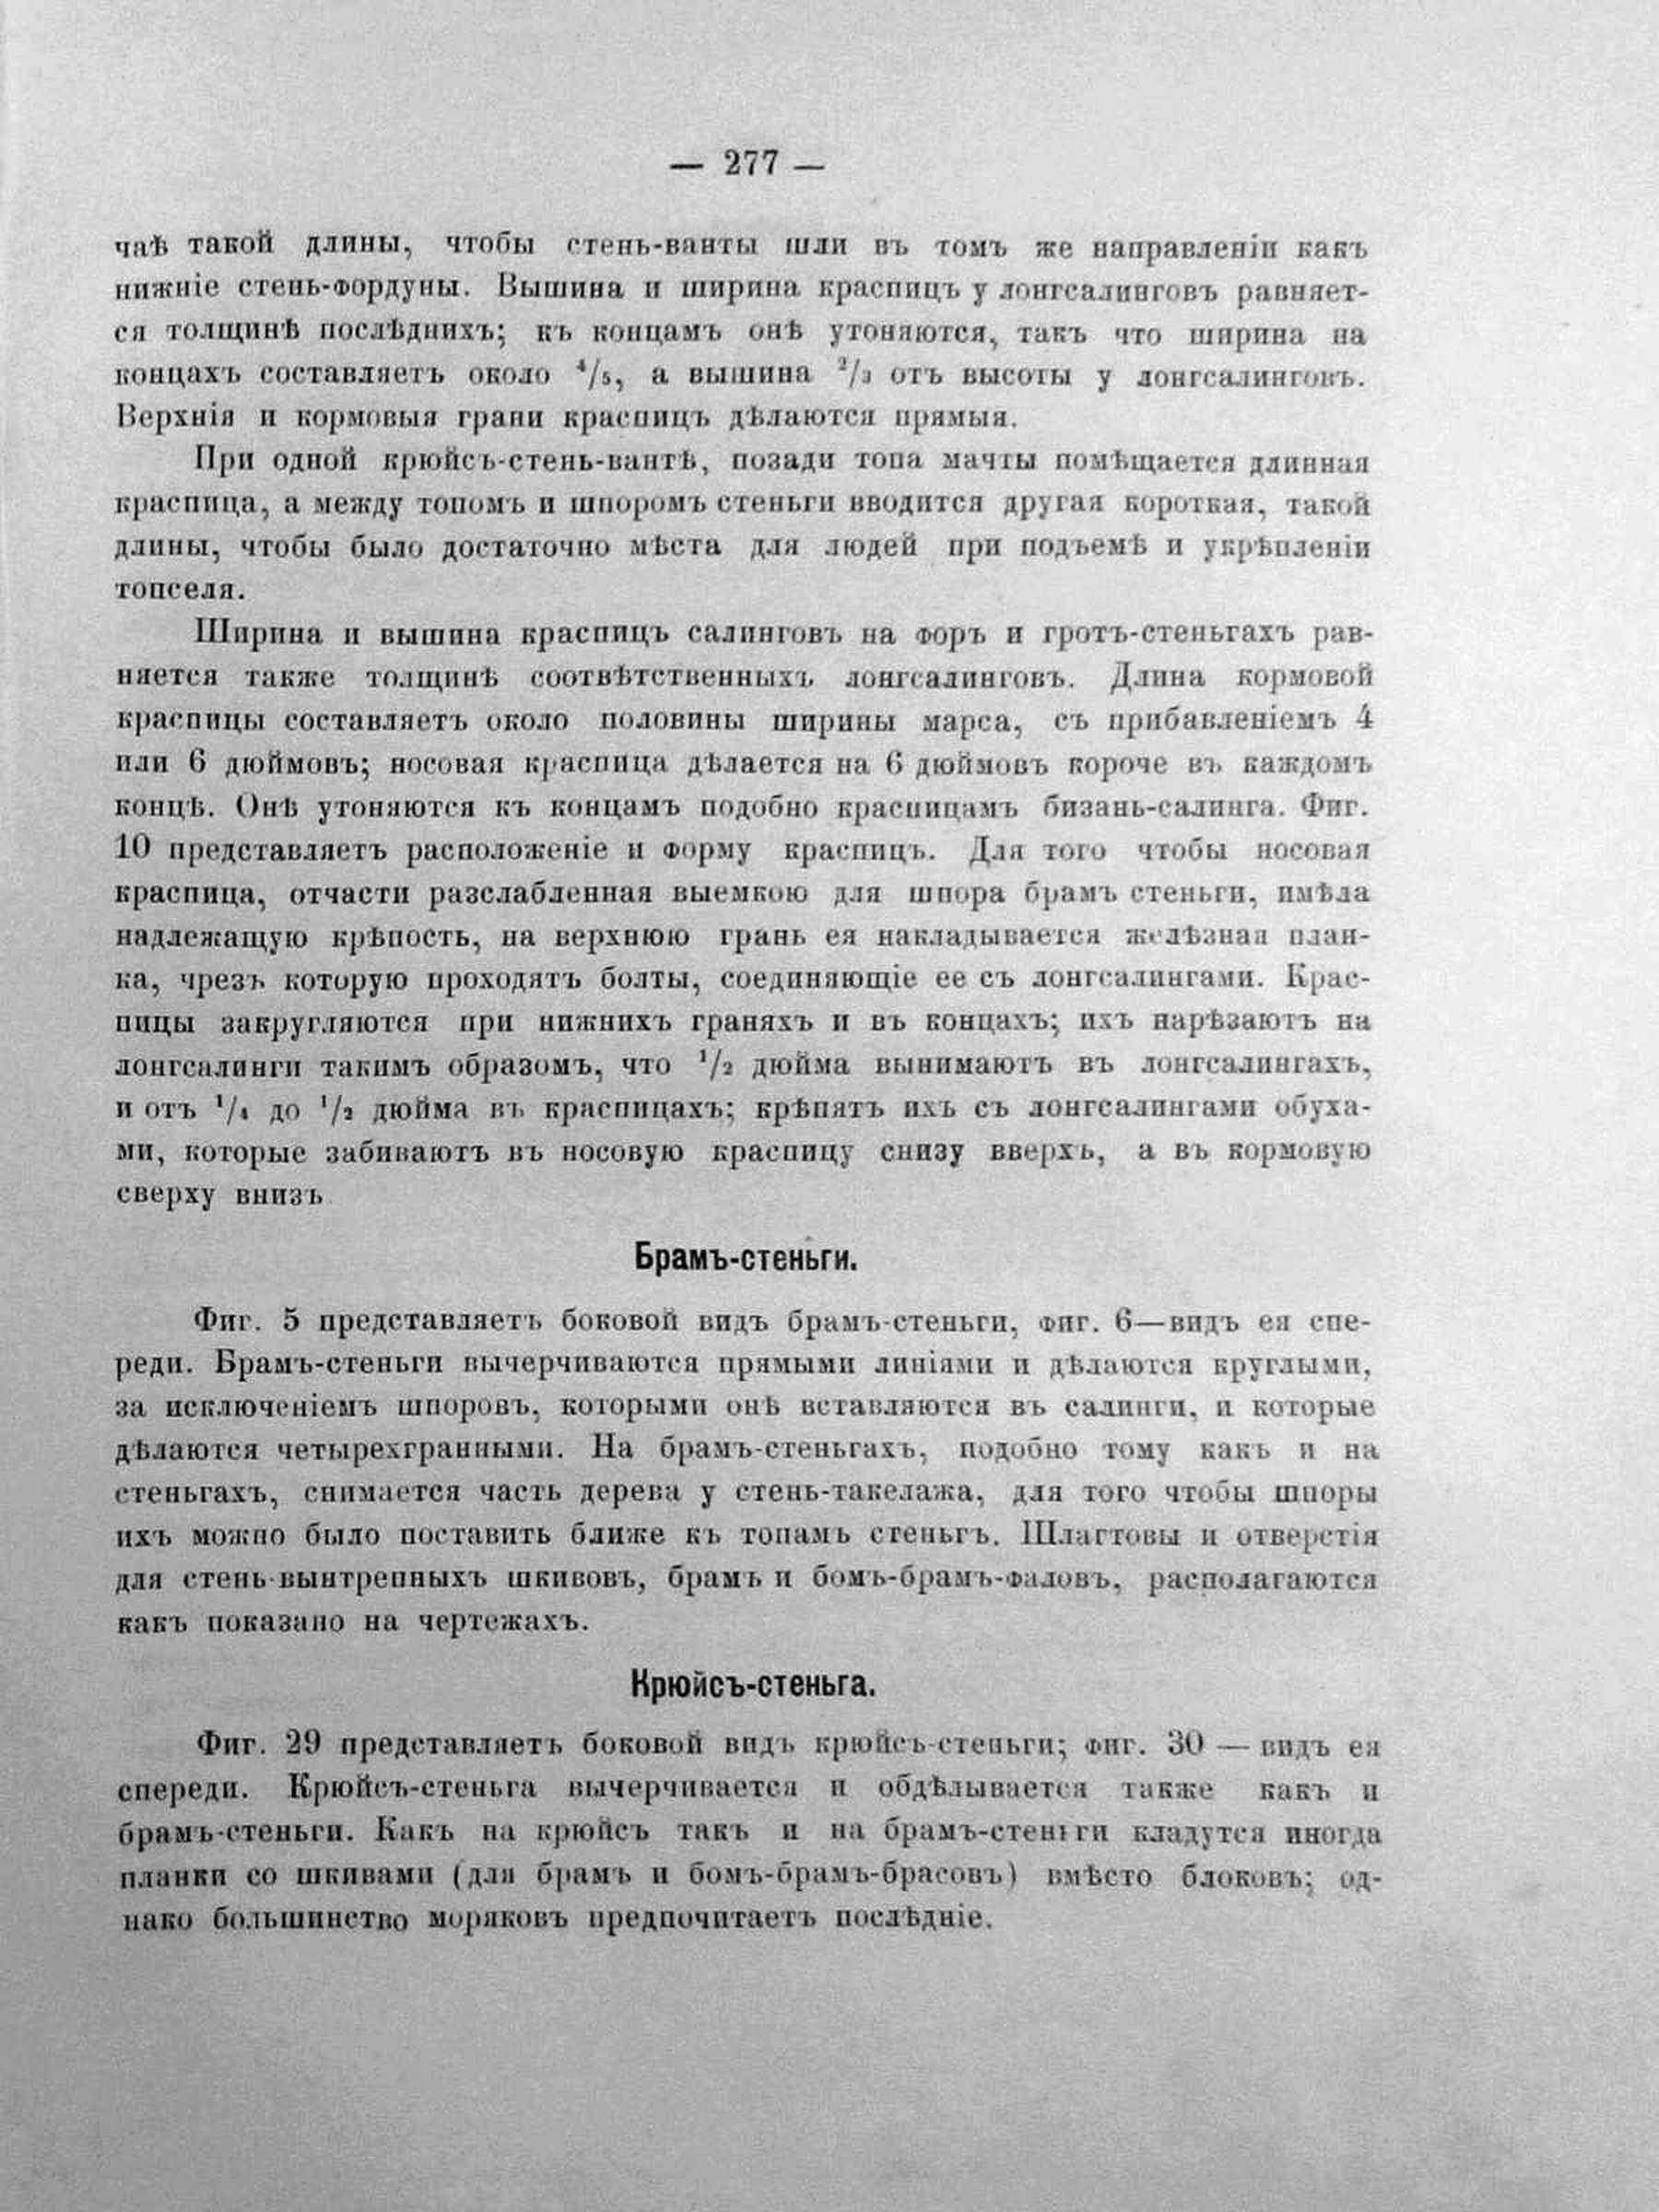 Киркергардт Практика торгового судостроения - 0282.jpg